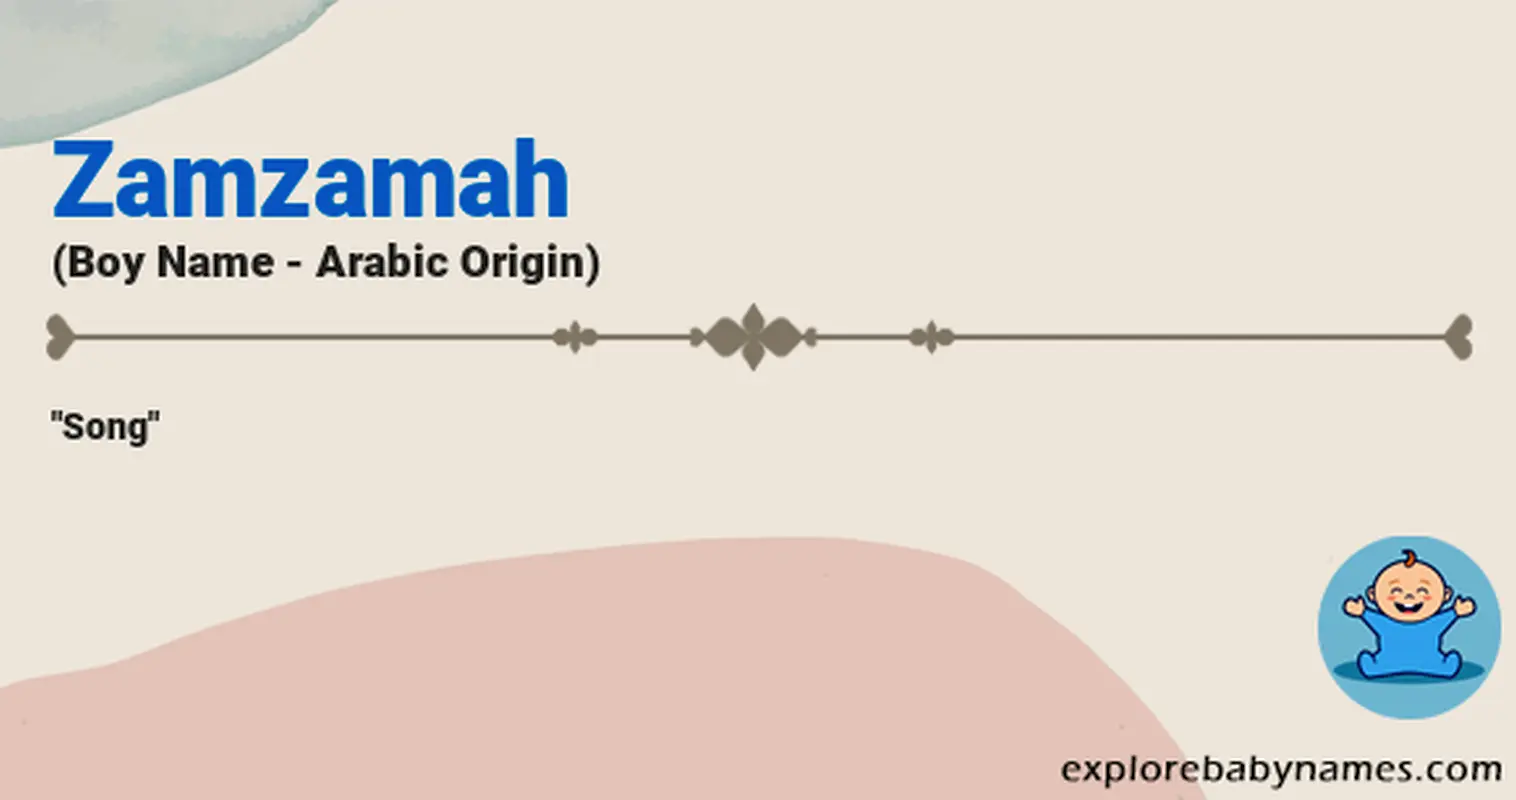 Meaning of Zamzamah